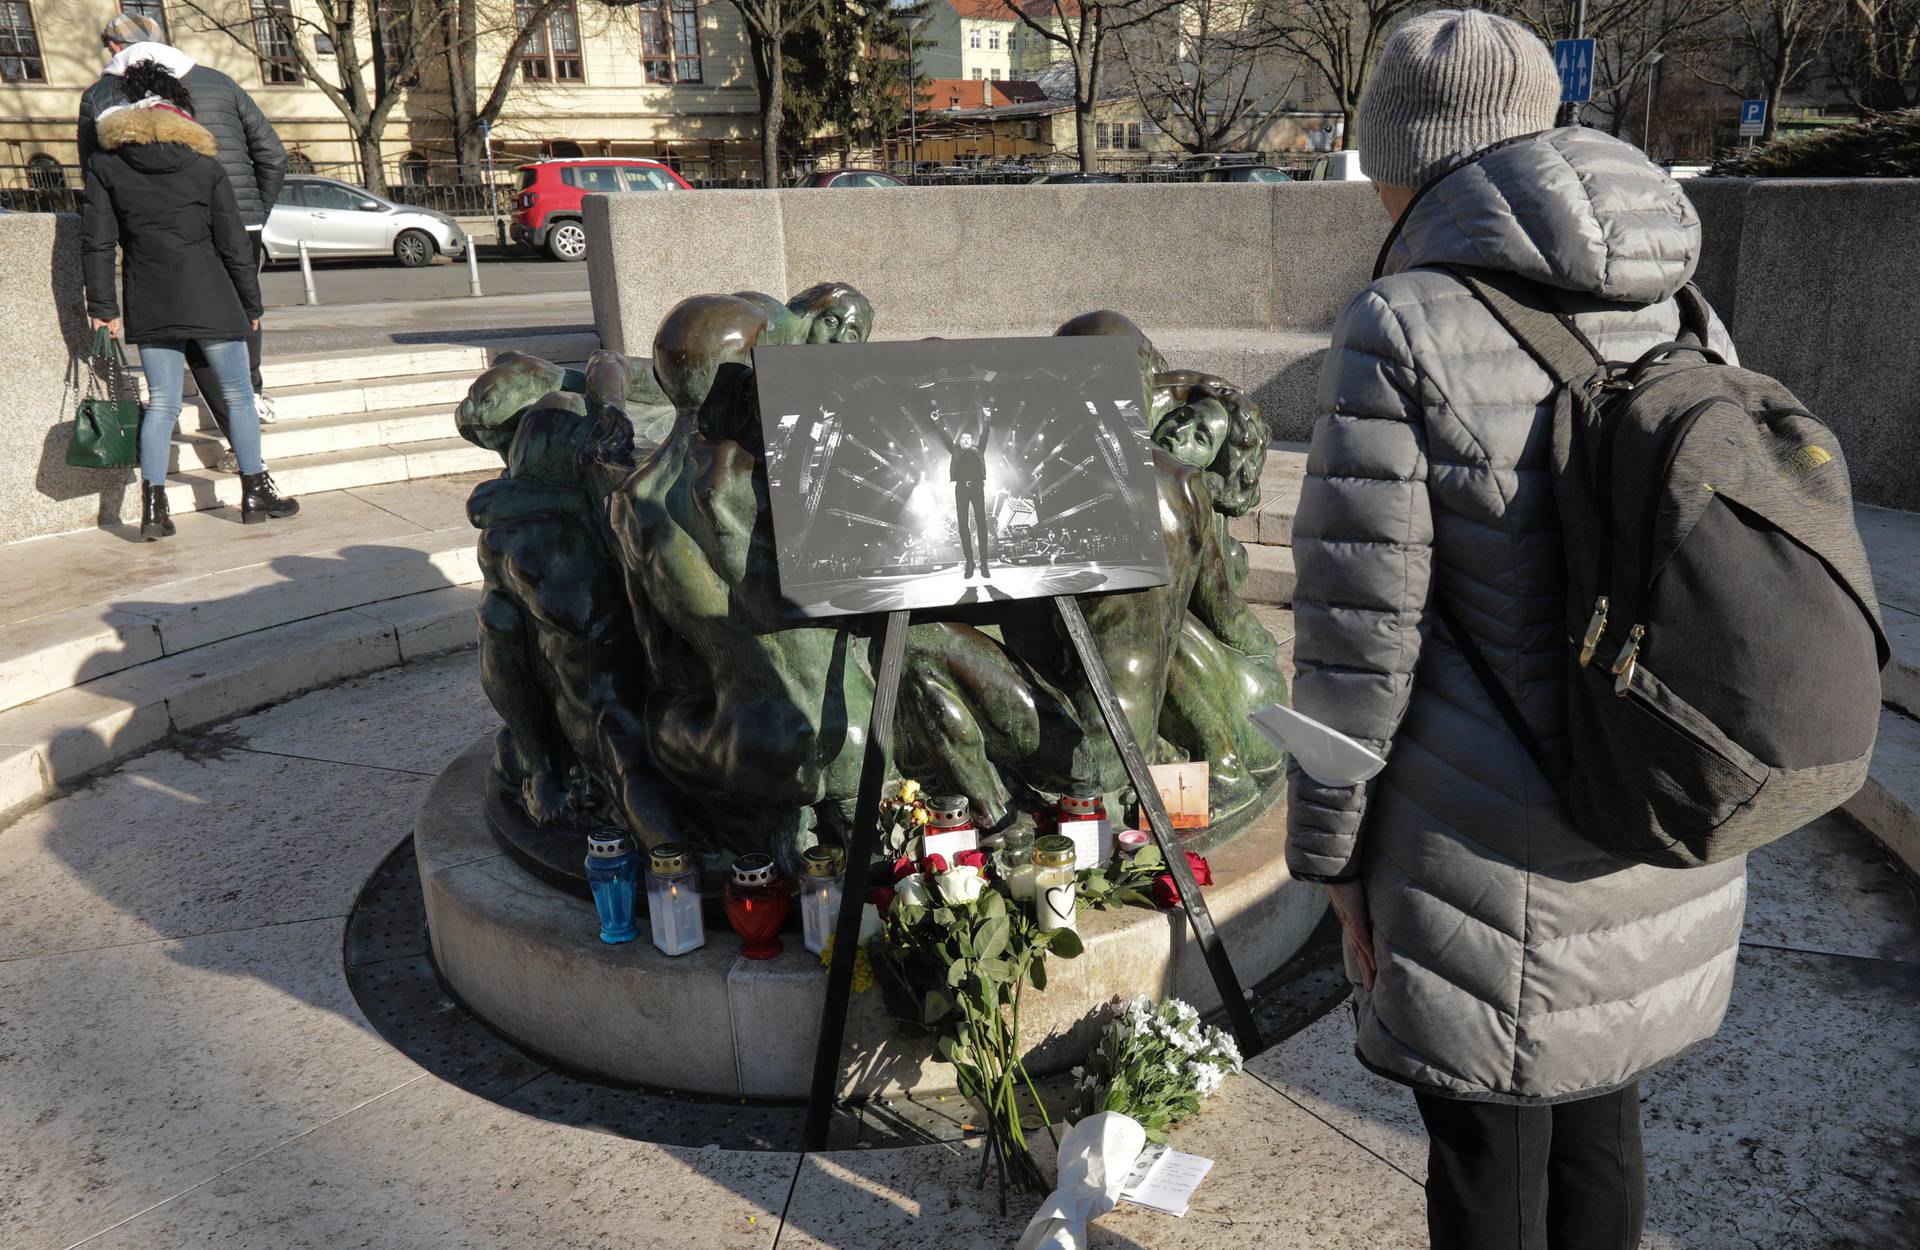 Zagreb: Husein Hasanefendić Hus i prijatelji postavili sliku Akija Rahimovskog kod Zdenca života  i zapalili svijeće 
   